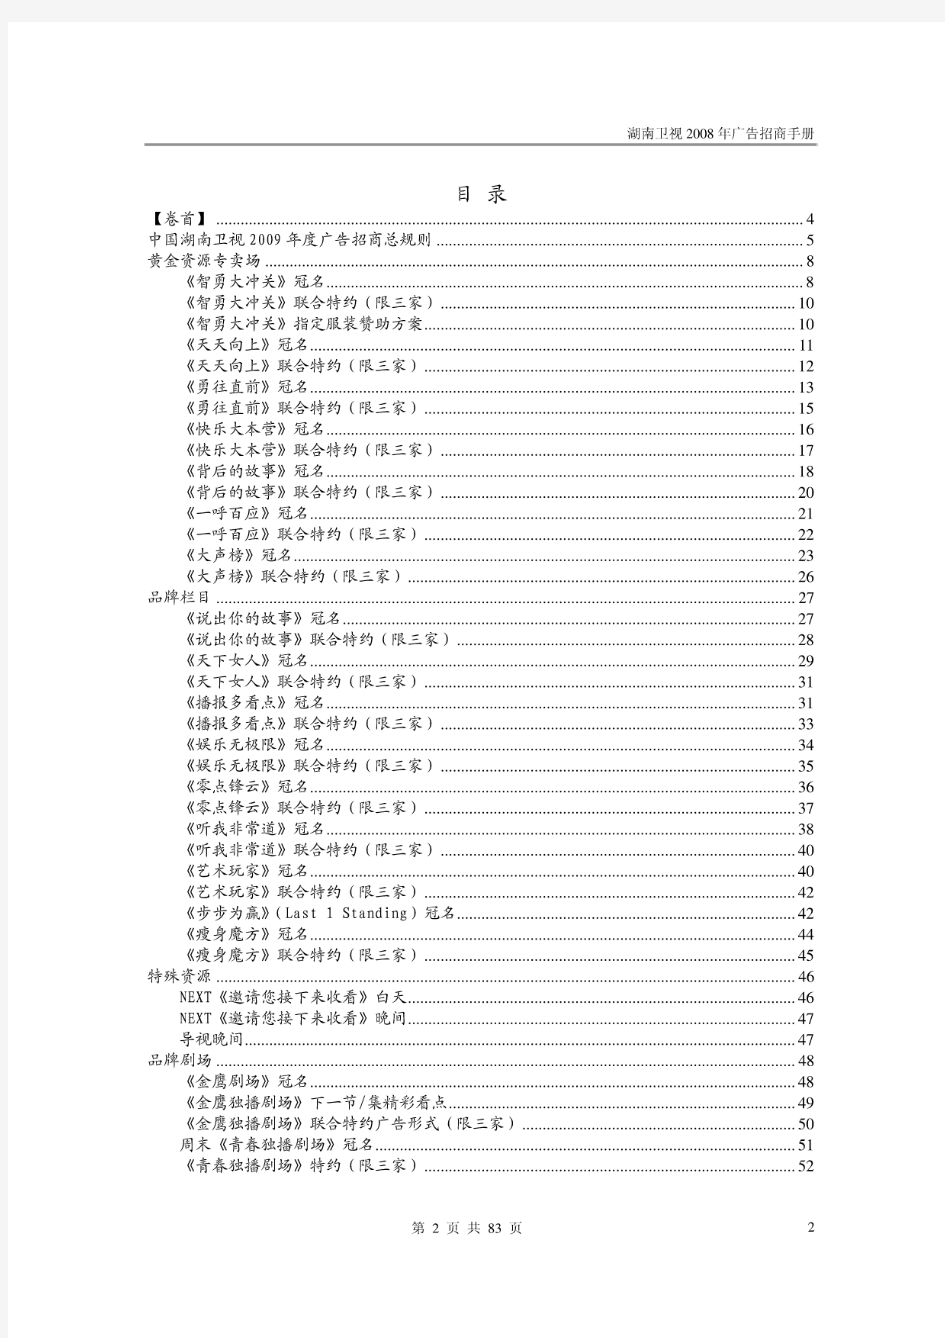 湖南卫视2009年广告招商手册